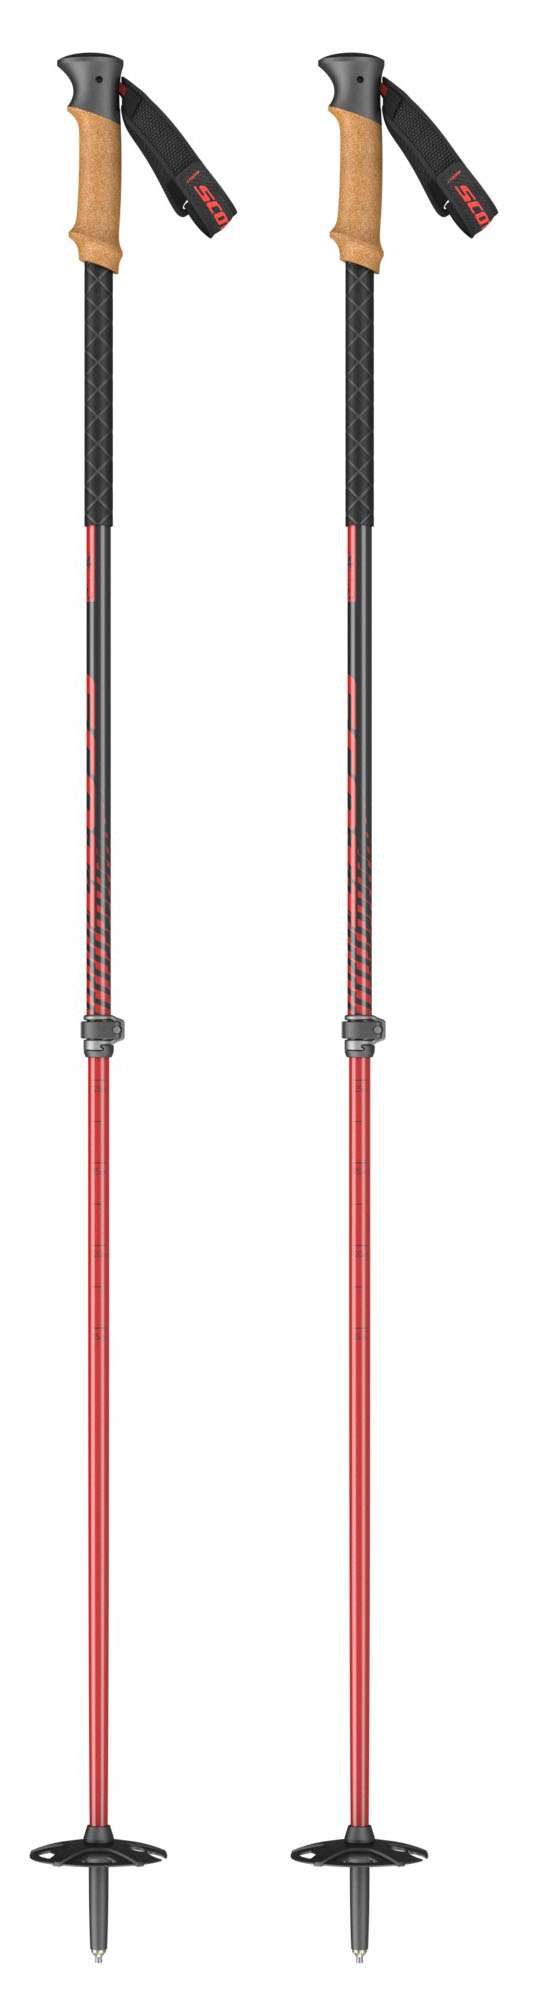 Scott Proguide SRS Adjustable ski poles